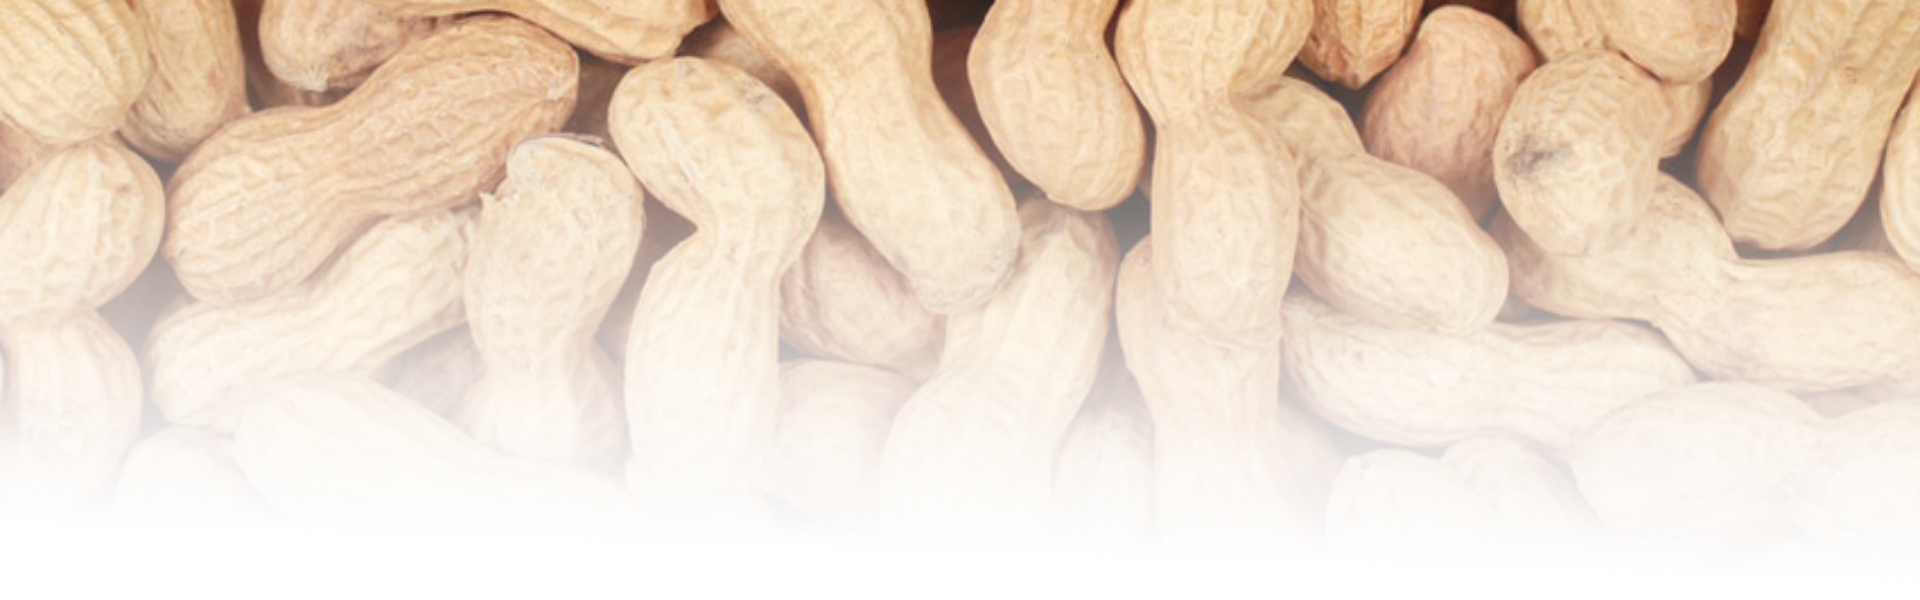 Peanut Food